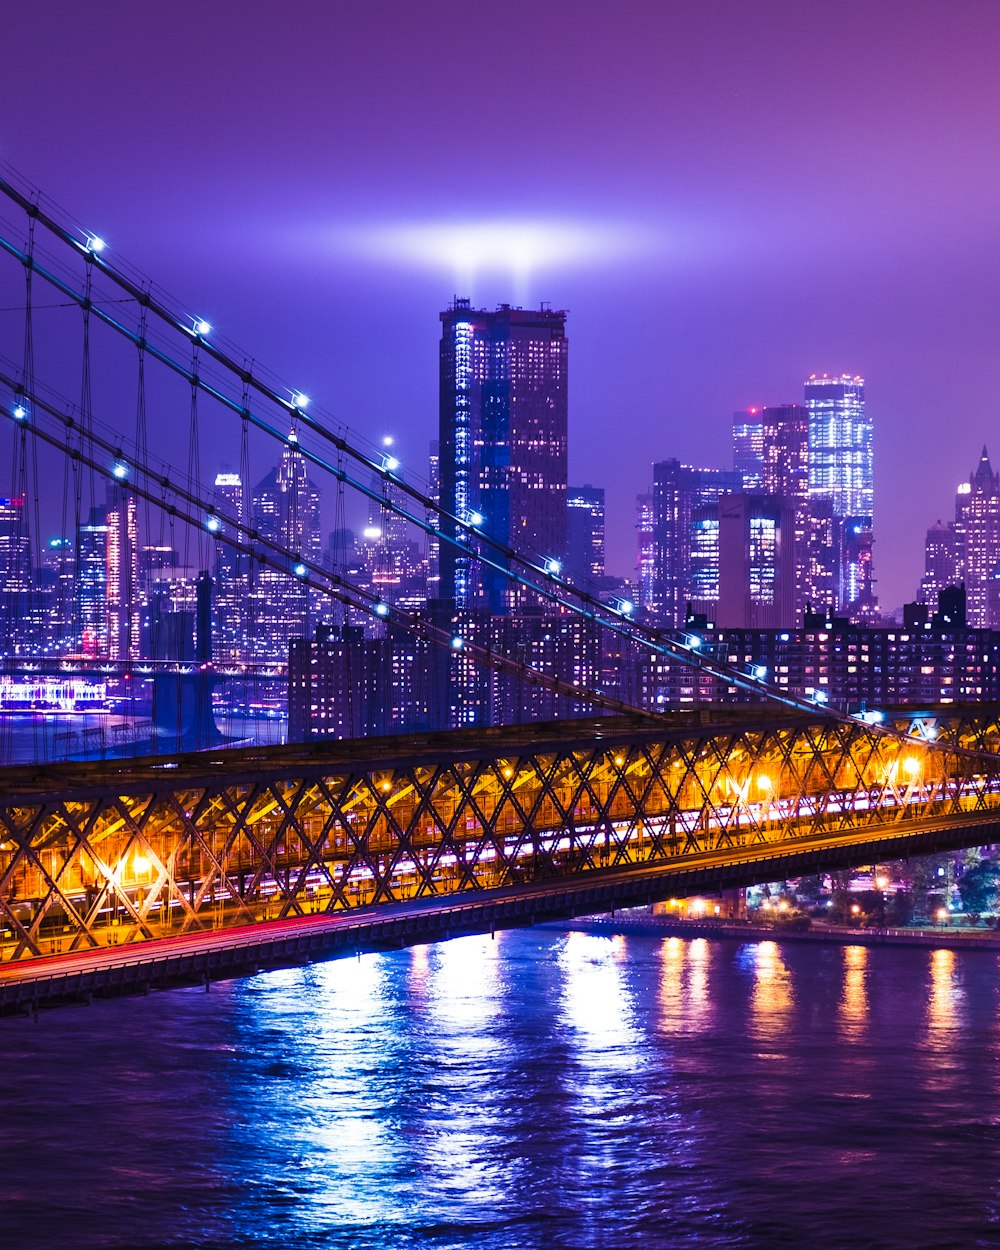 Photographie d’un pont suspendu et d’un immeuble de grande hauteur pendant la nuit